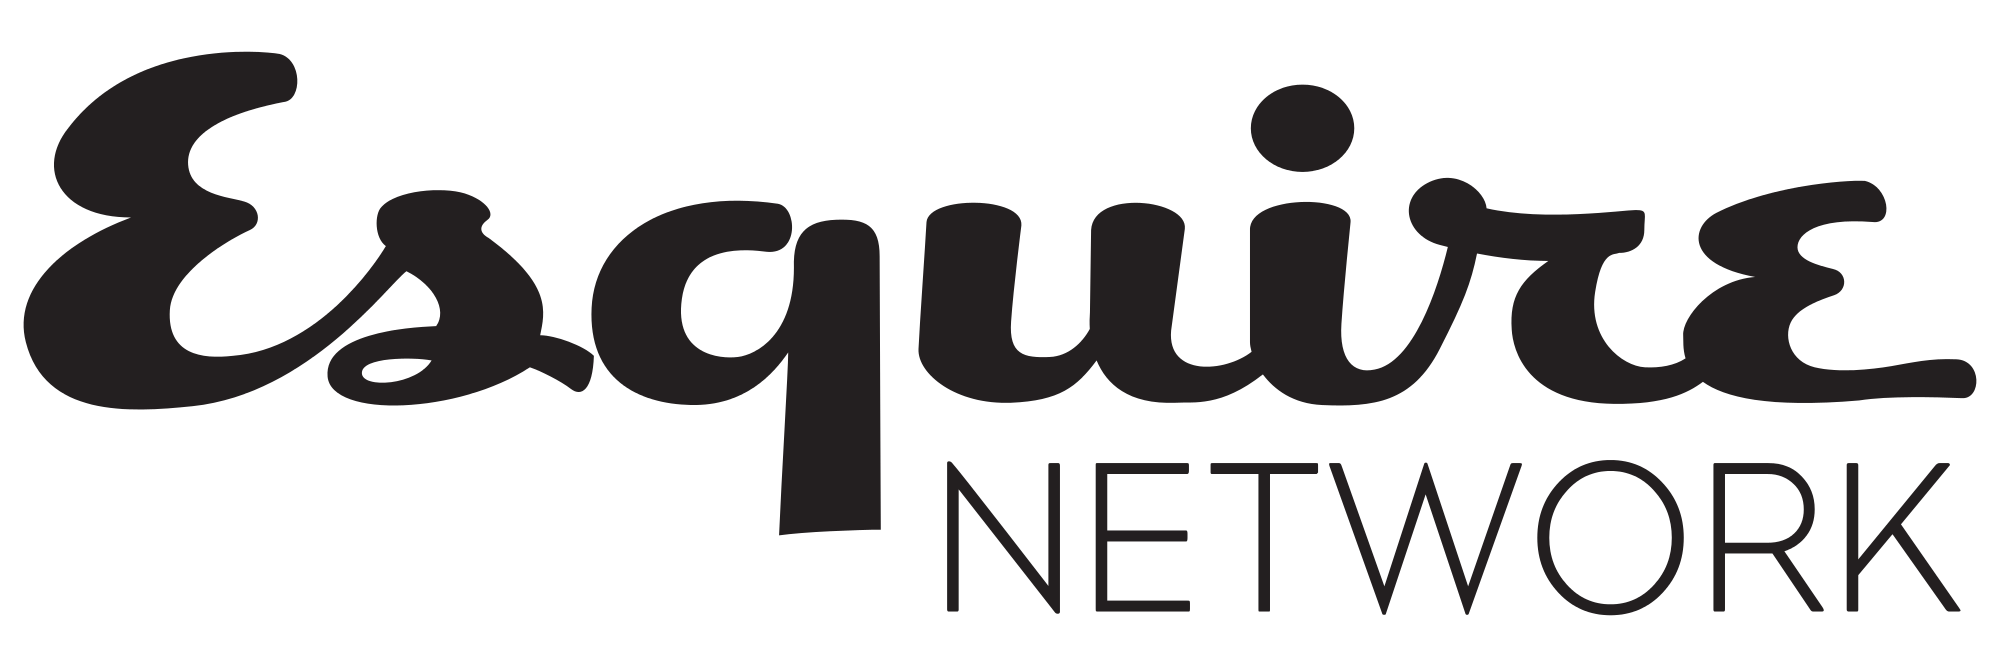 Esquire Logo - File:Esquire Network.svg - Wikimedia Commons